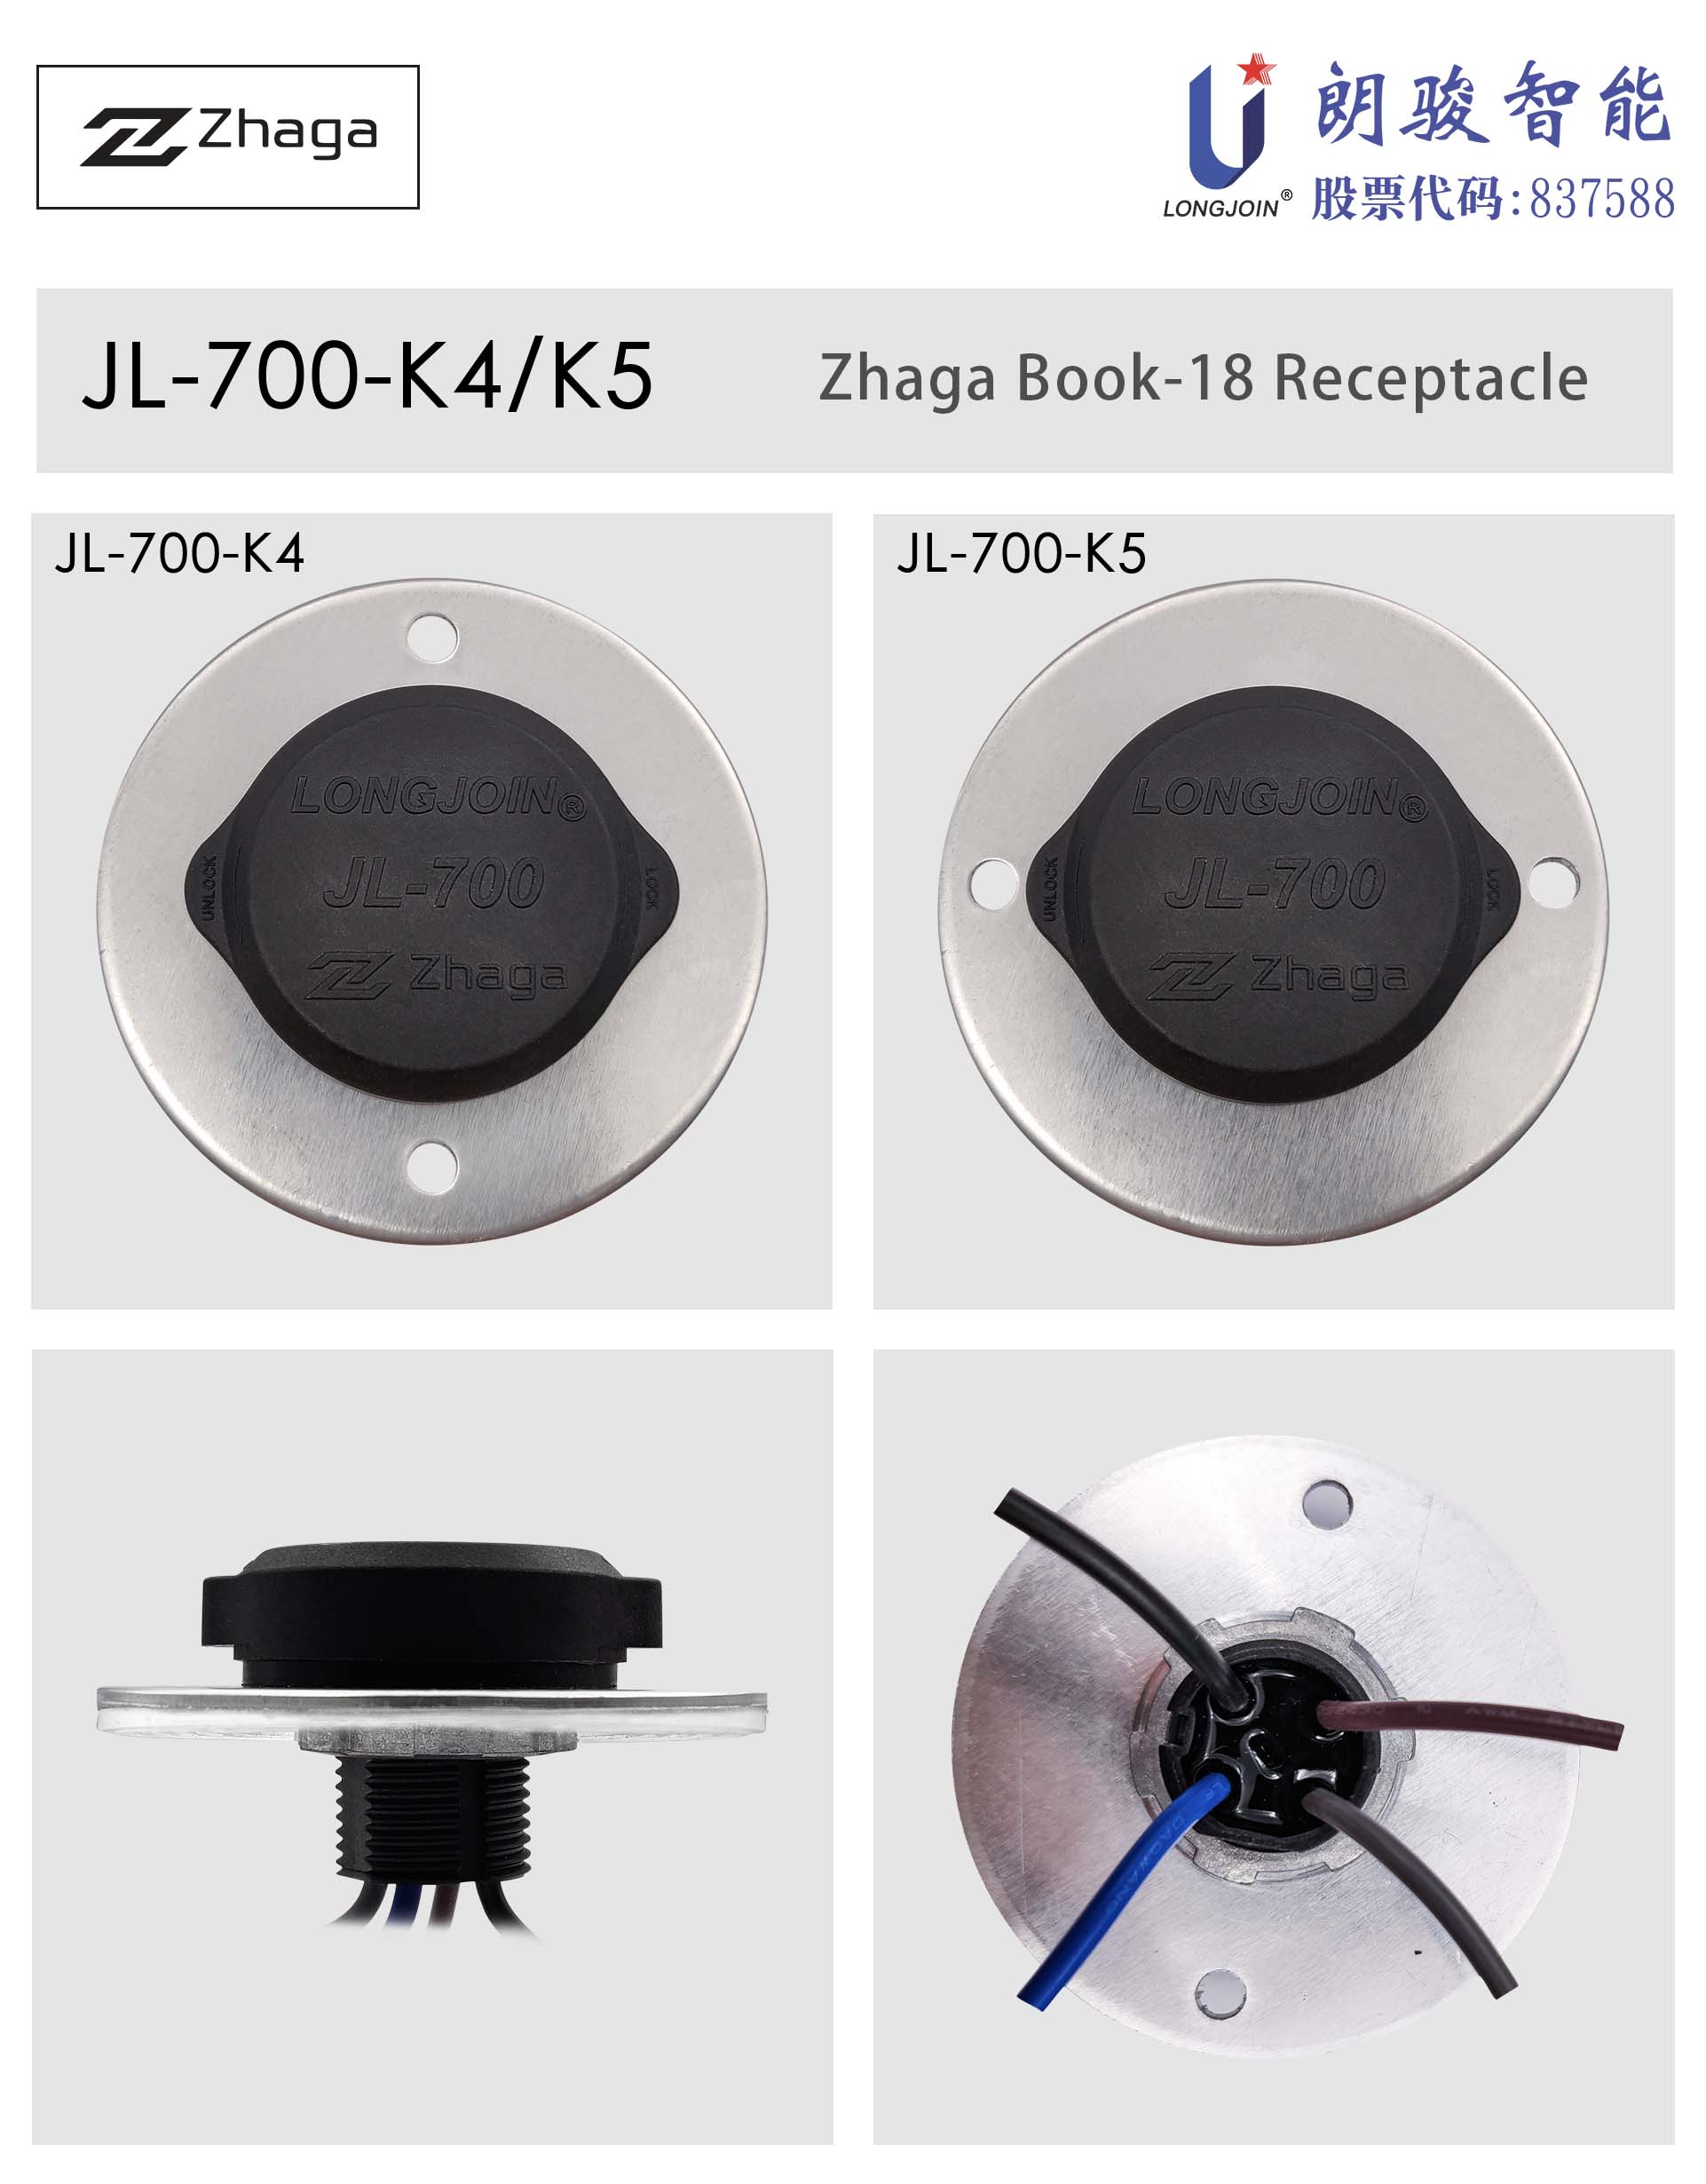 英文版1-JL-700-K4_K5 产品图.jpg